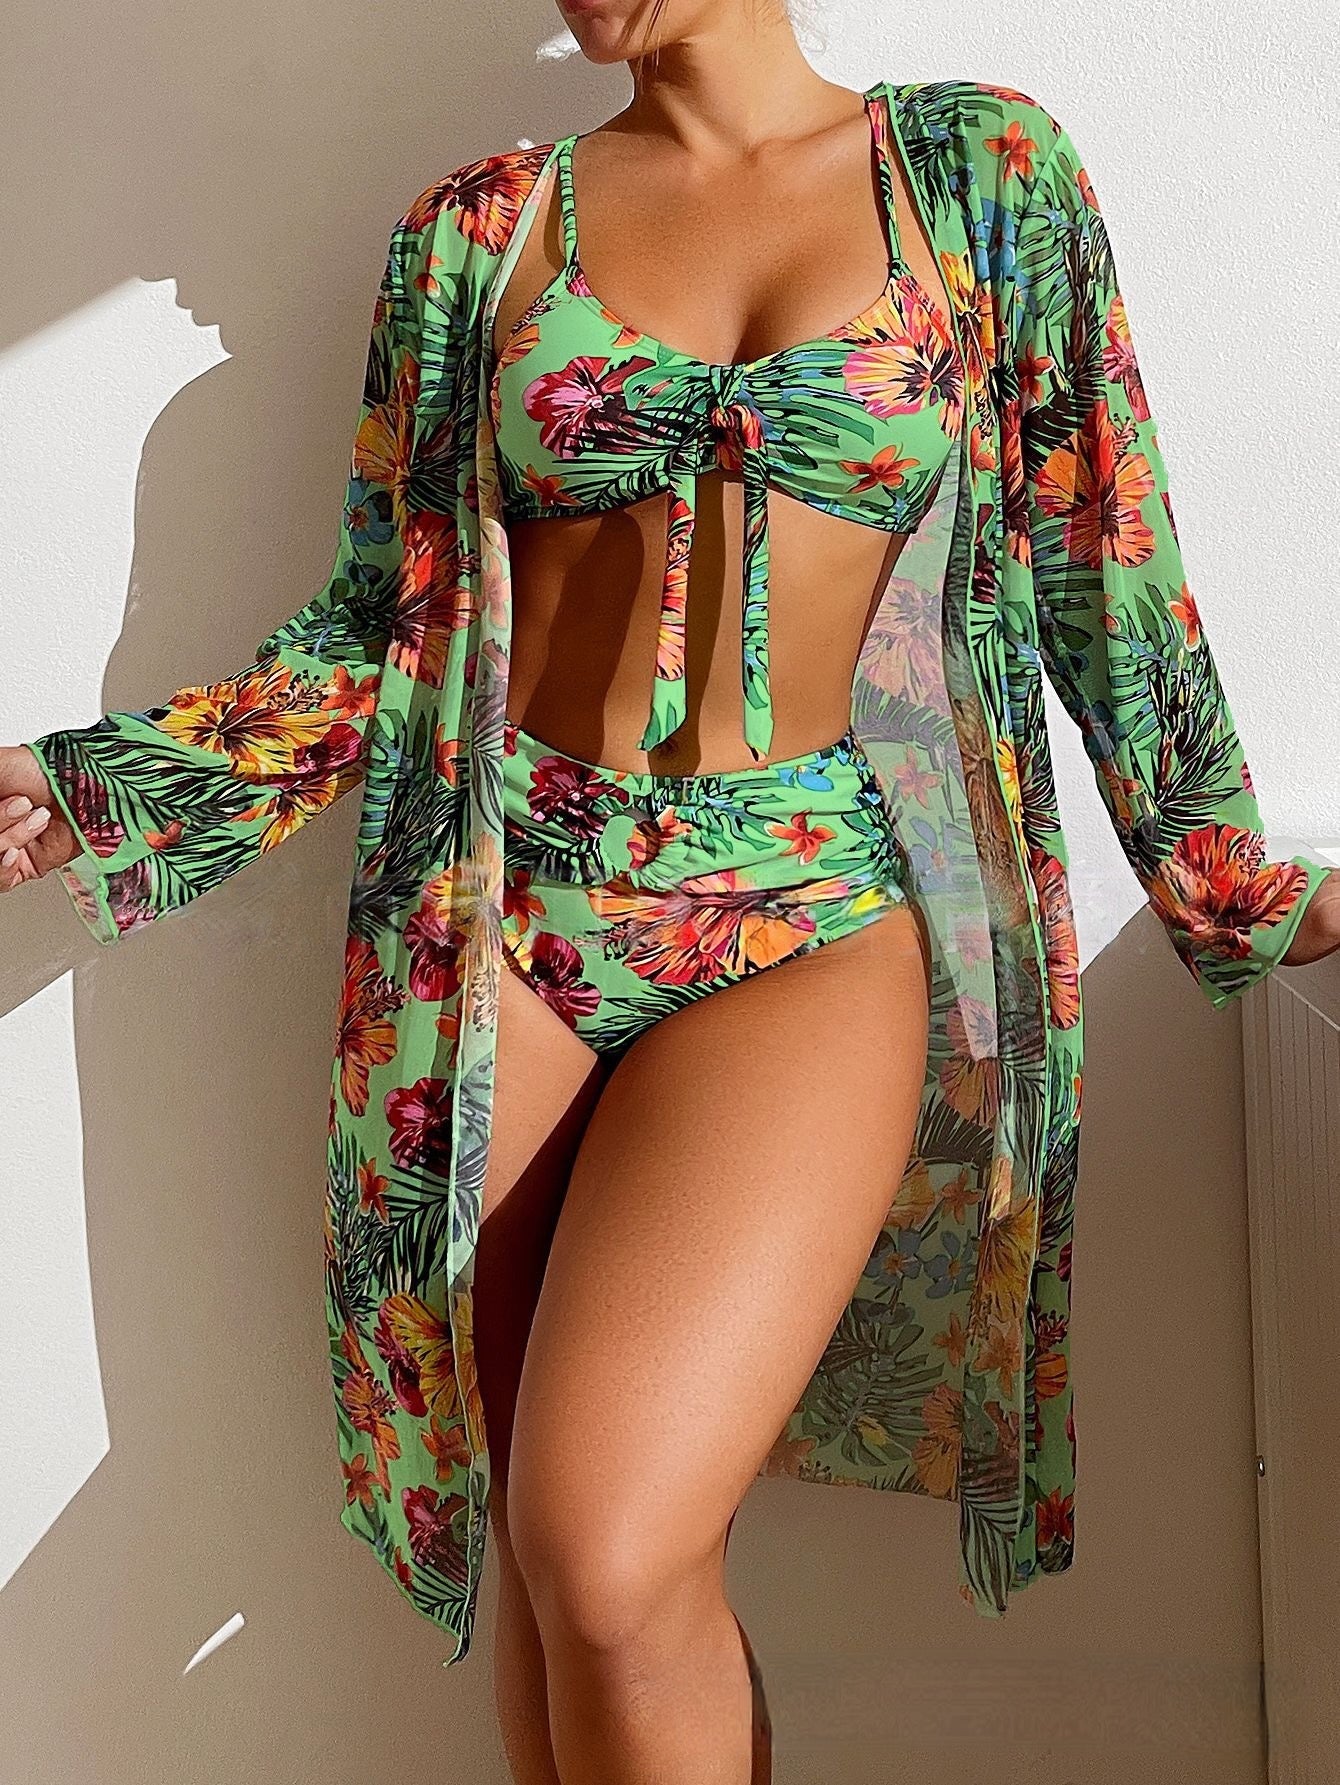 Jalina - Stylish bikini set for summer '23